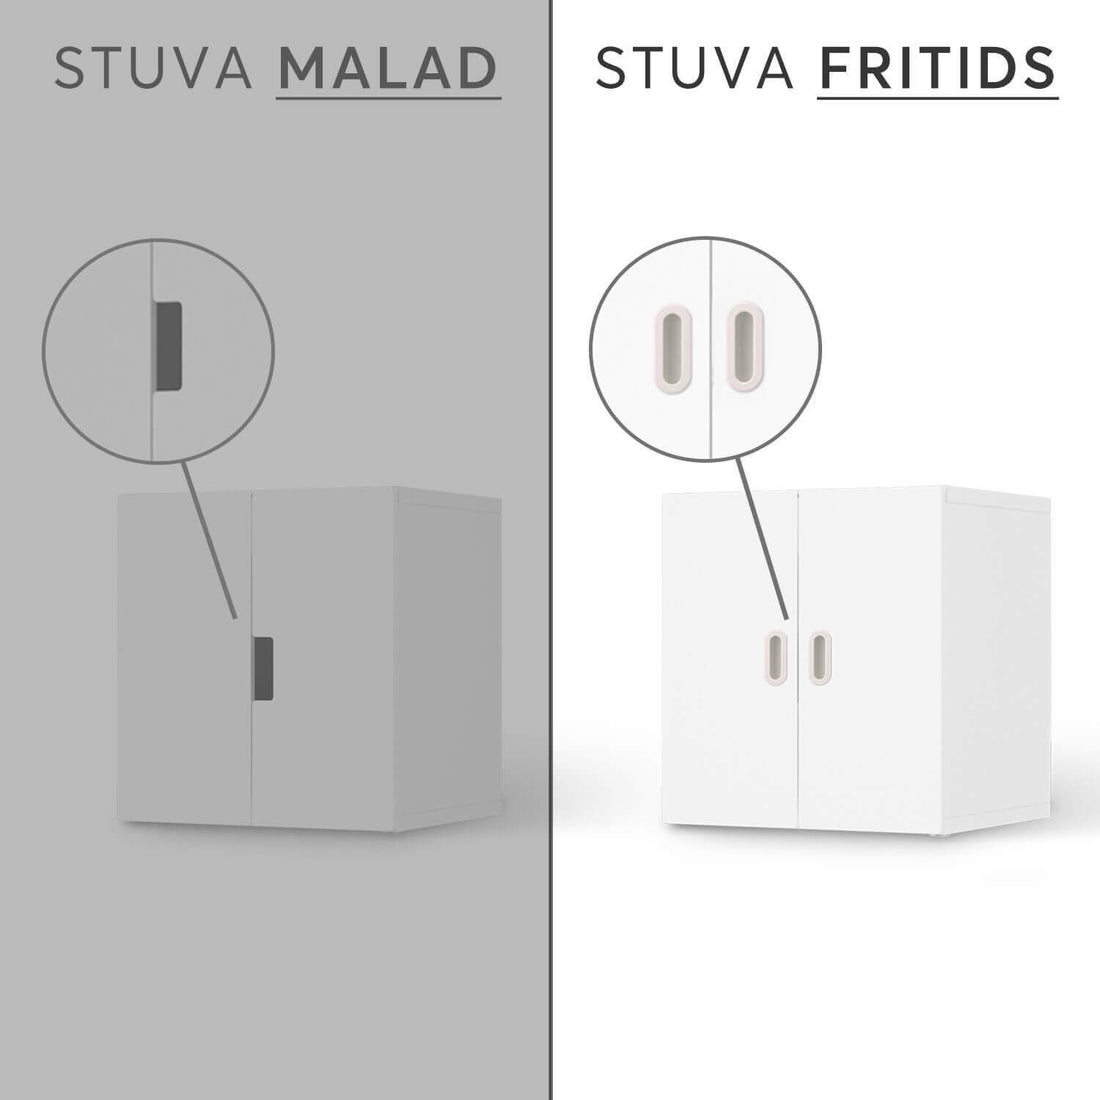 Vergleich IKEA Stuva Fritids / Malad - Golden Gate